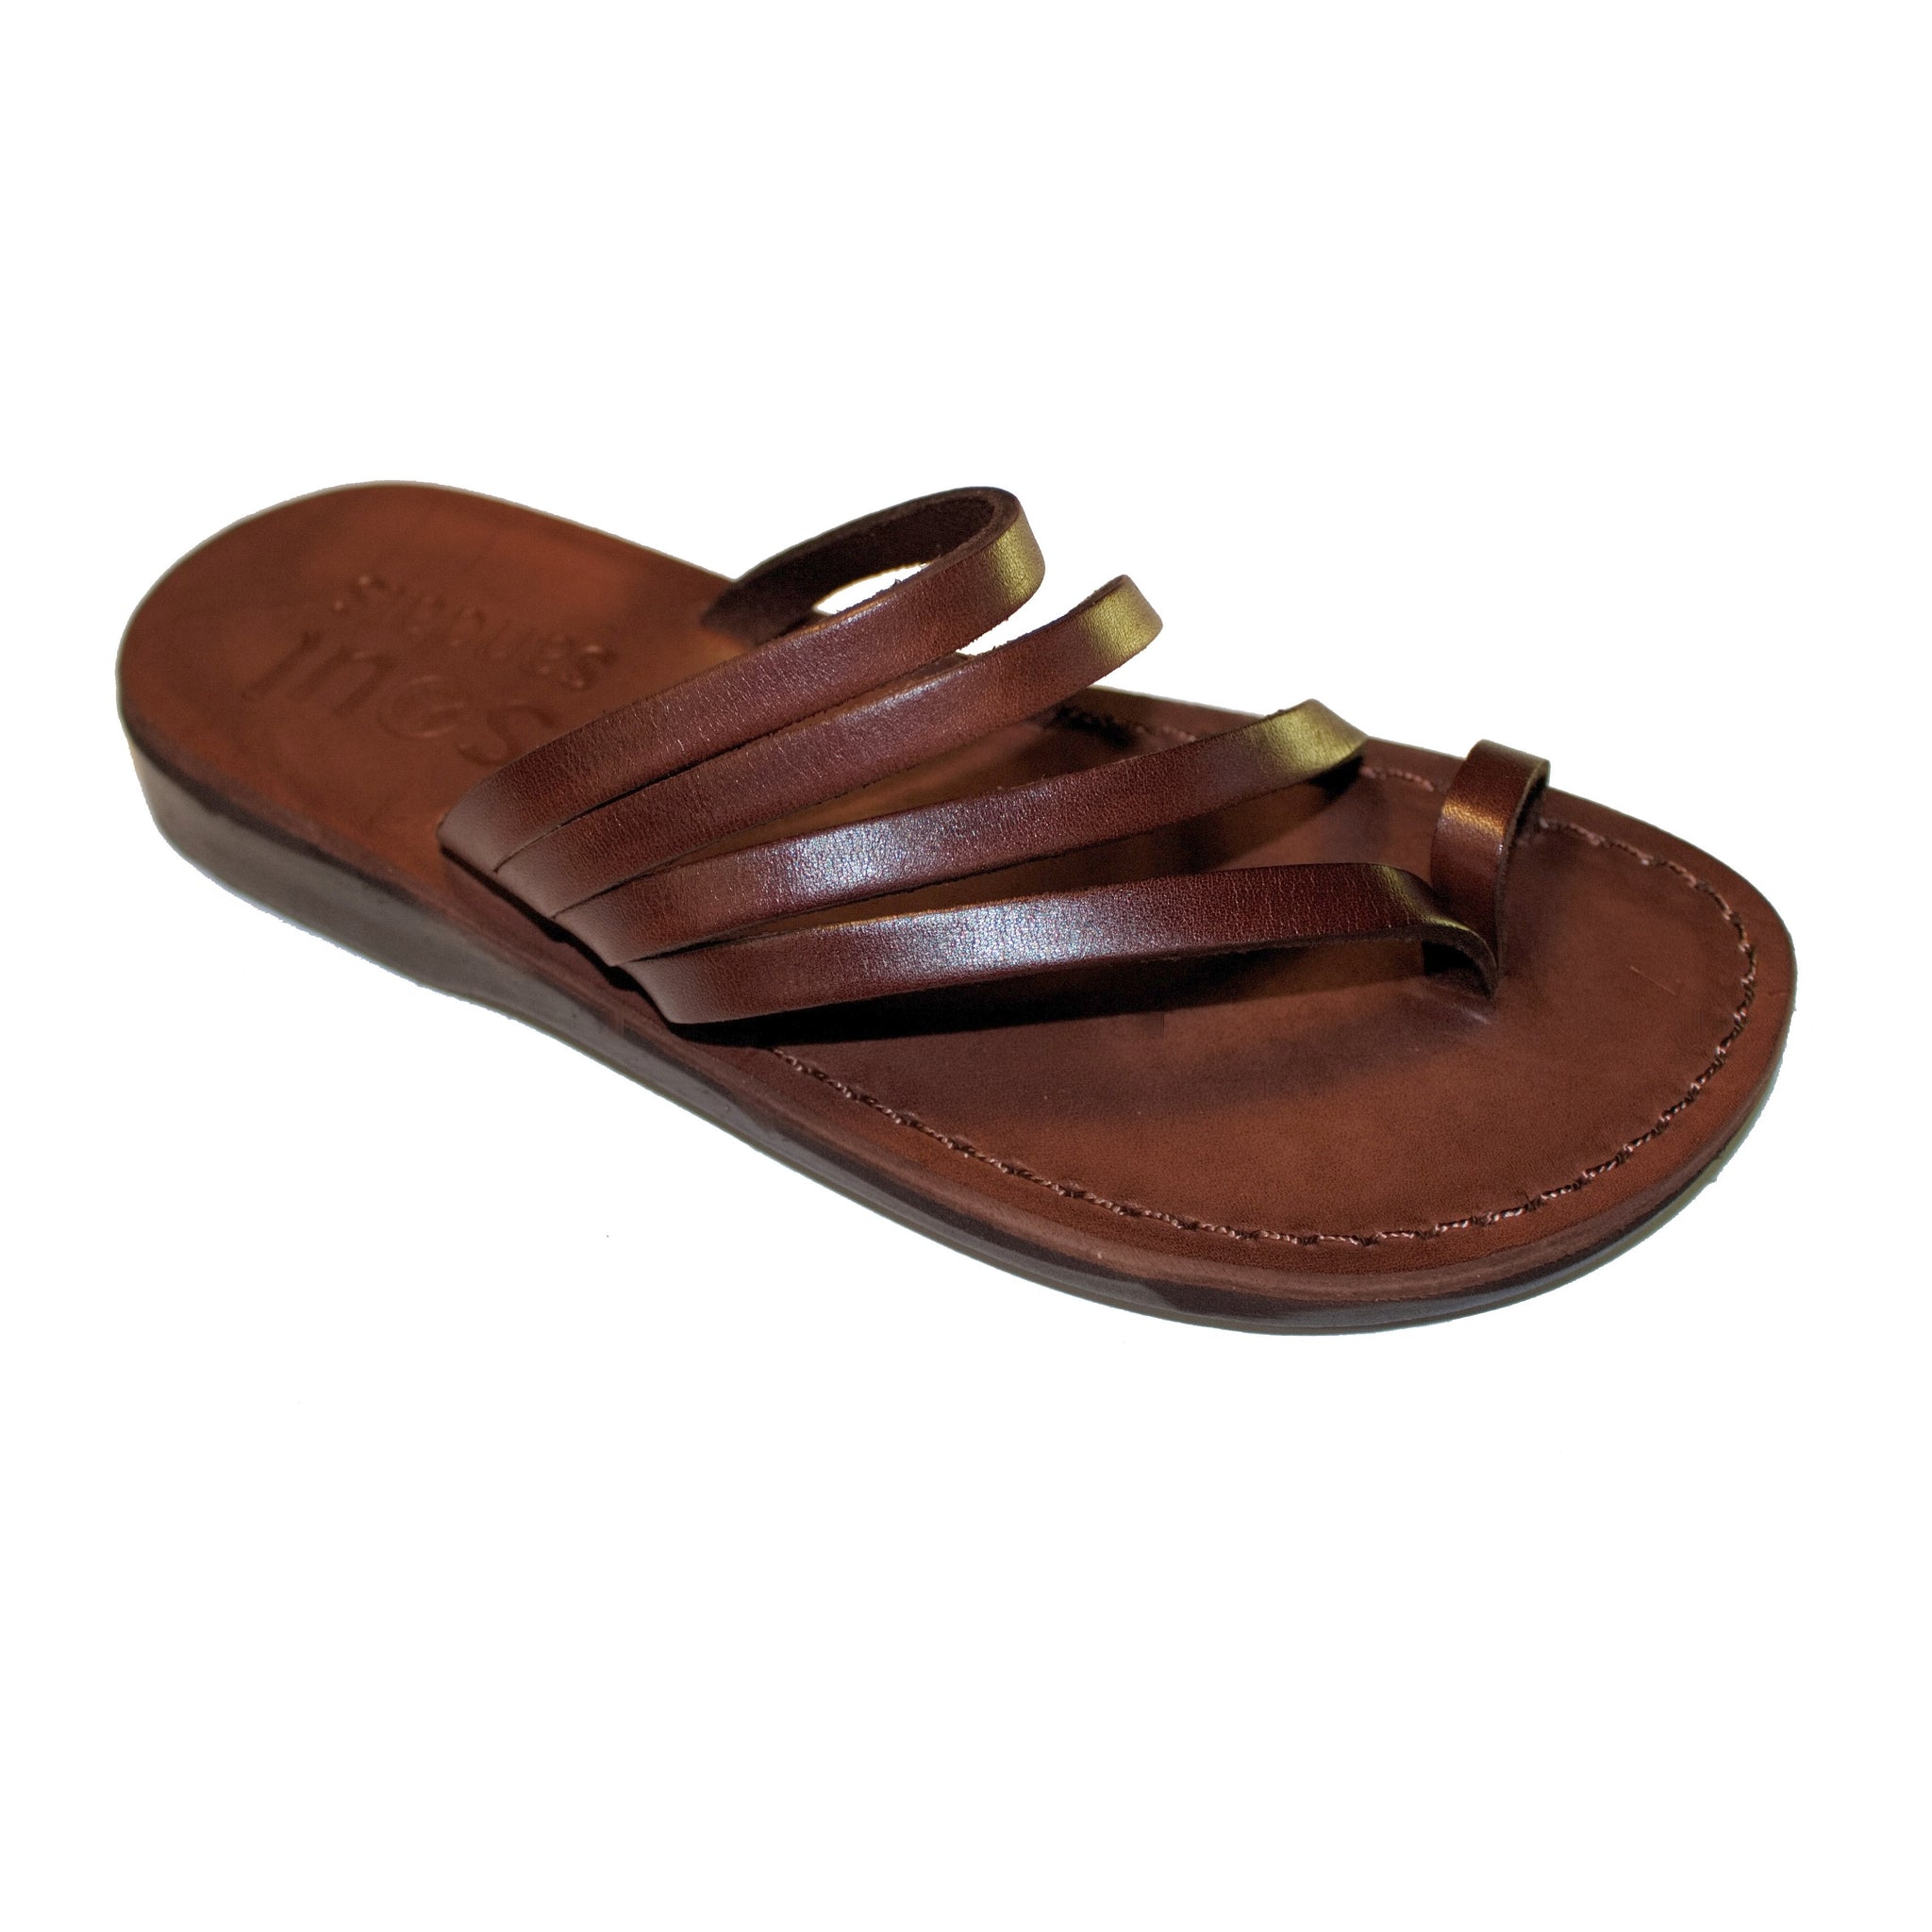 'Elouera' Leather Sandals – Soul Sandals Boots